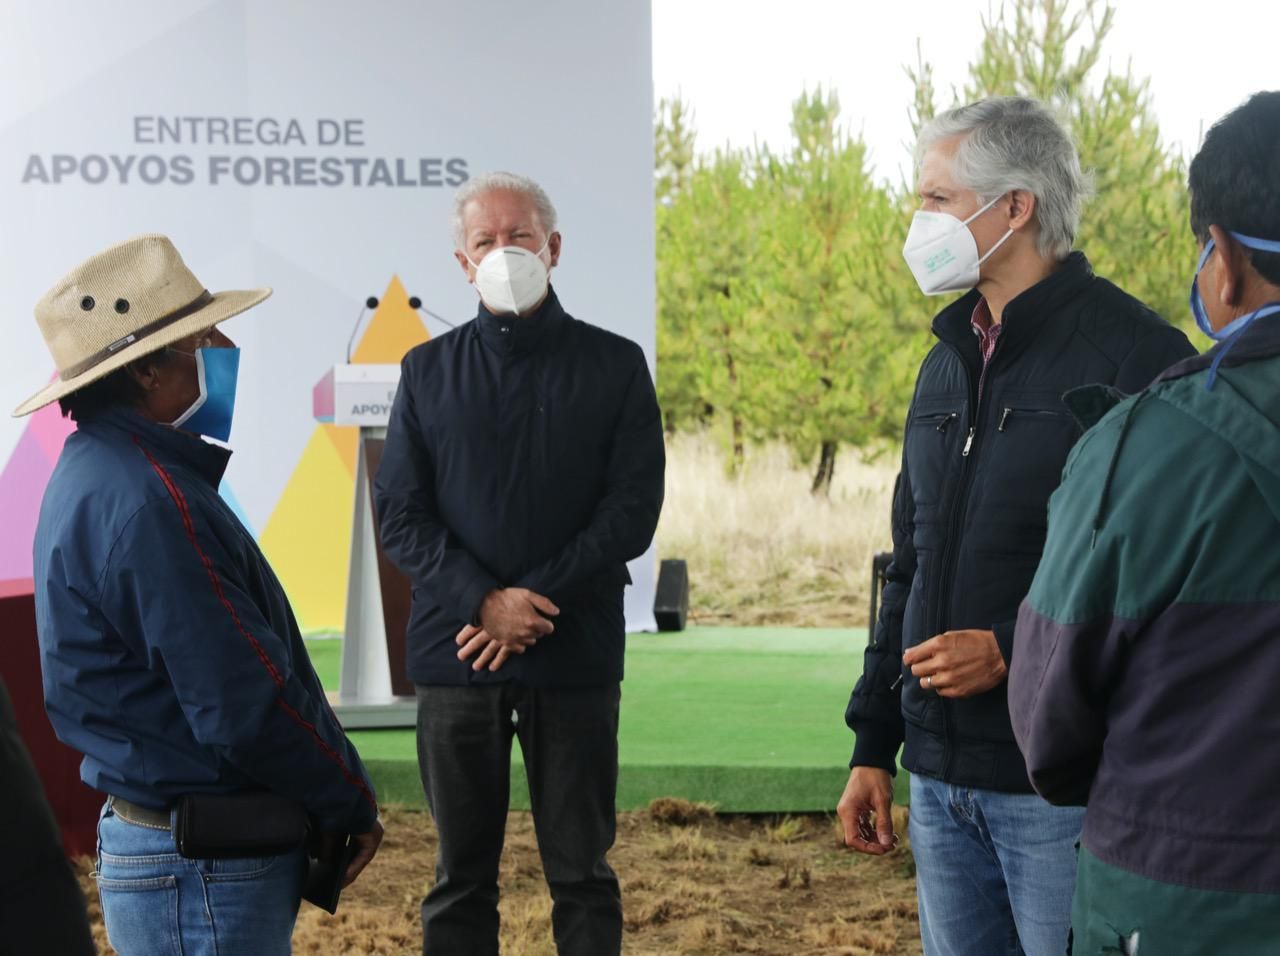 Apoya gobernador Alfredo del Mazo a la economía de las familias mexiquenses con la entrega de apoyos forestales